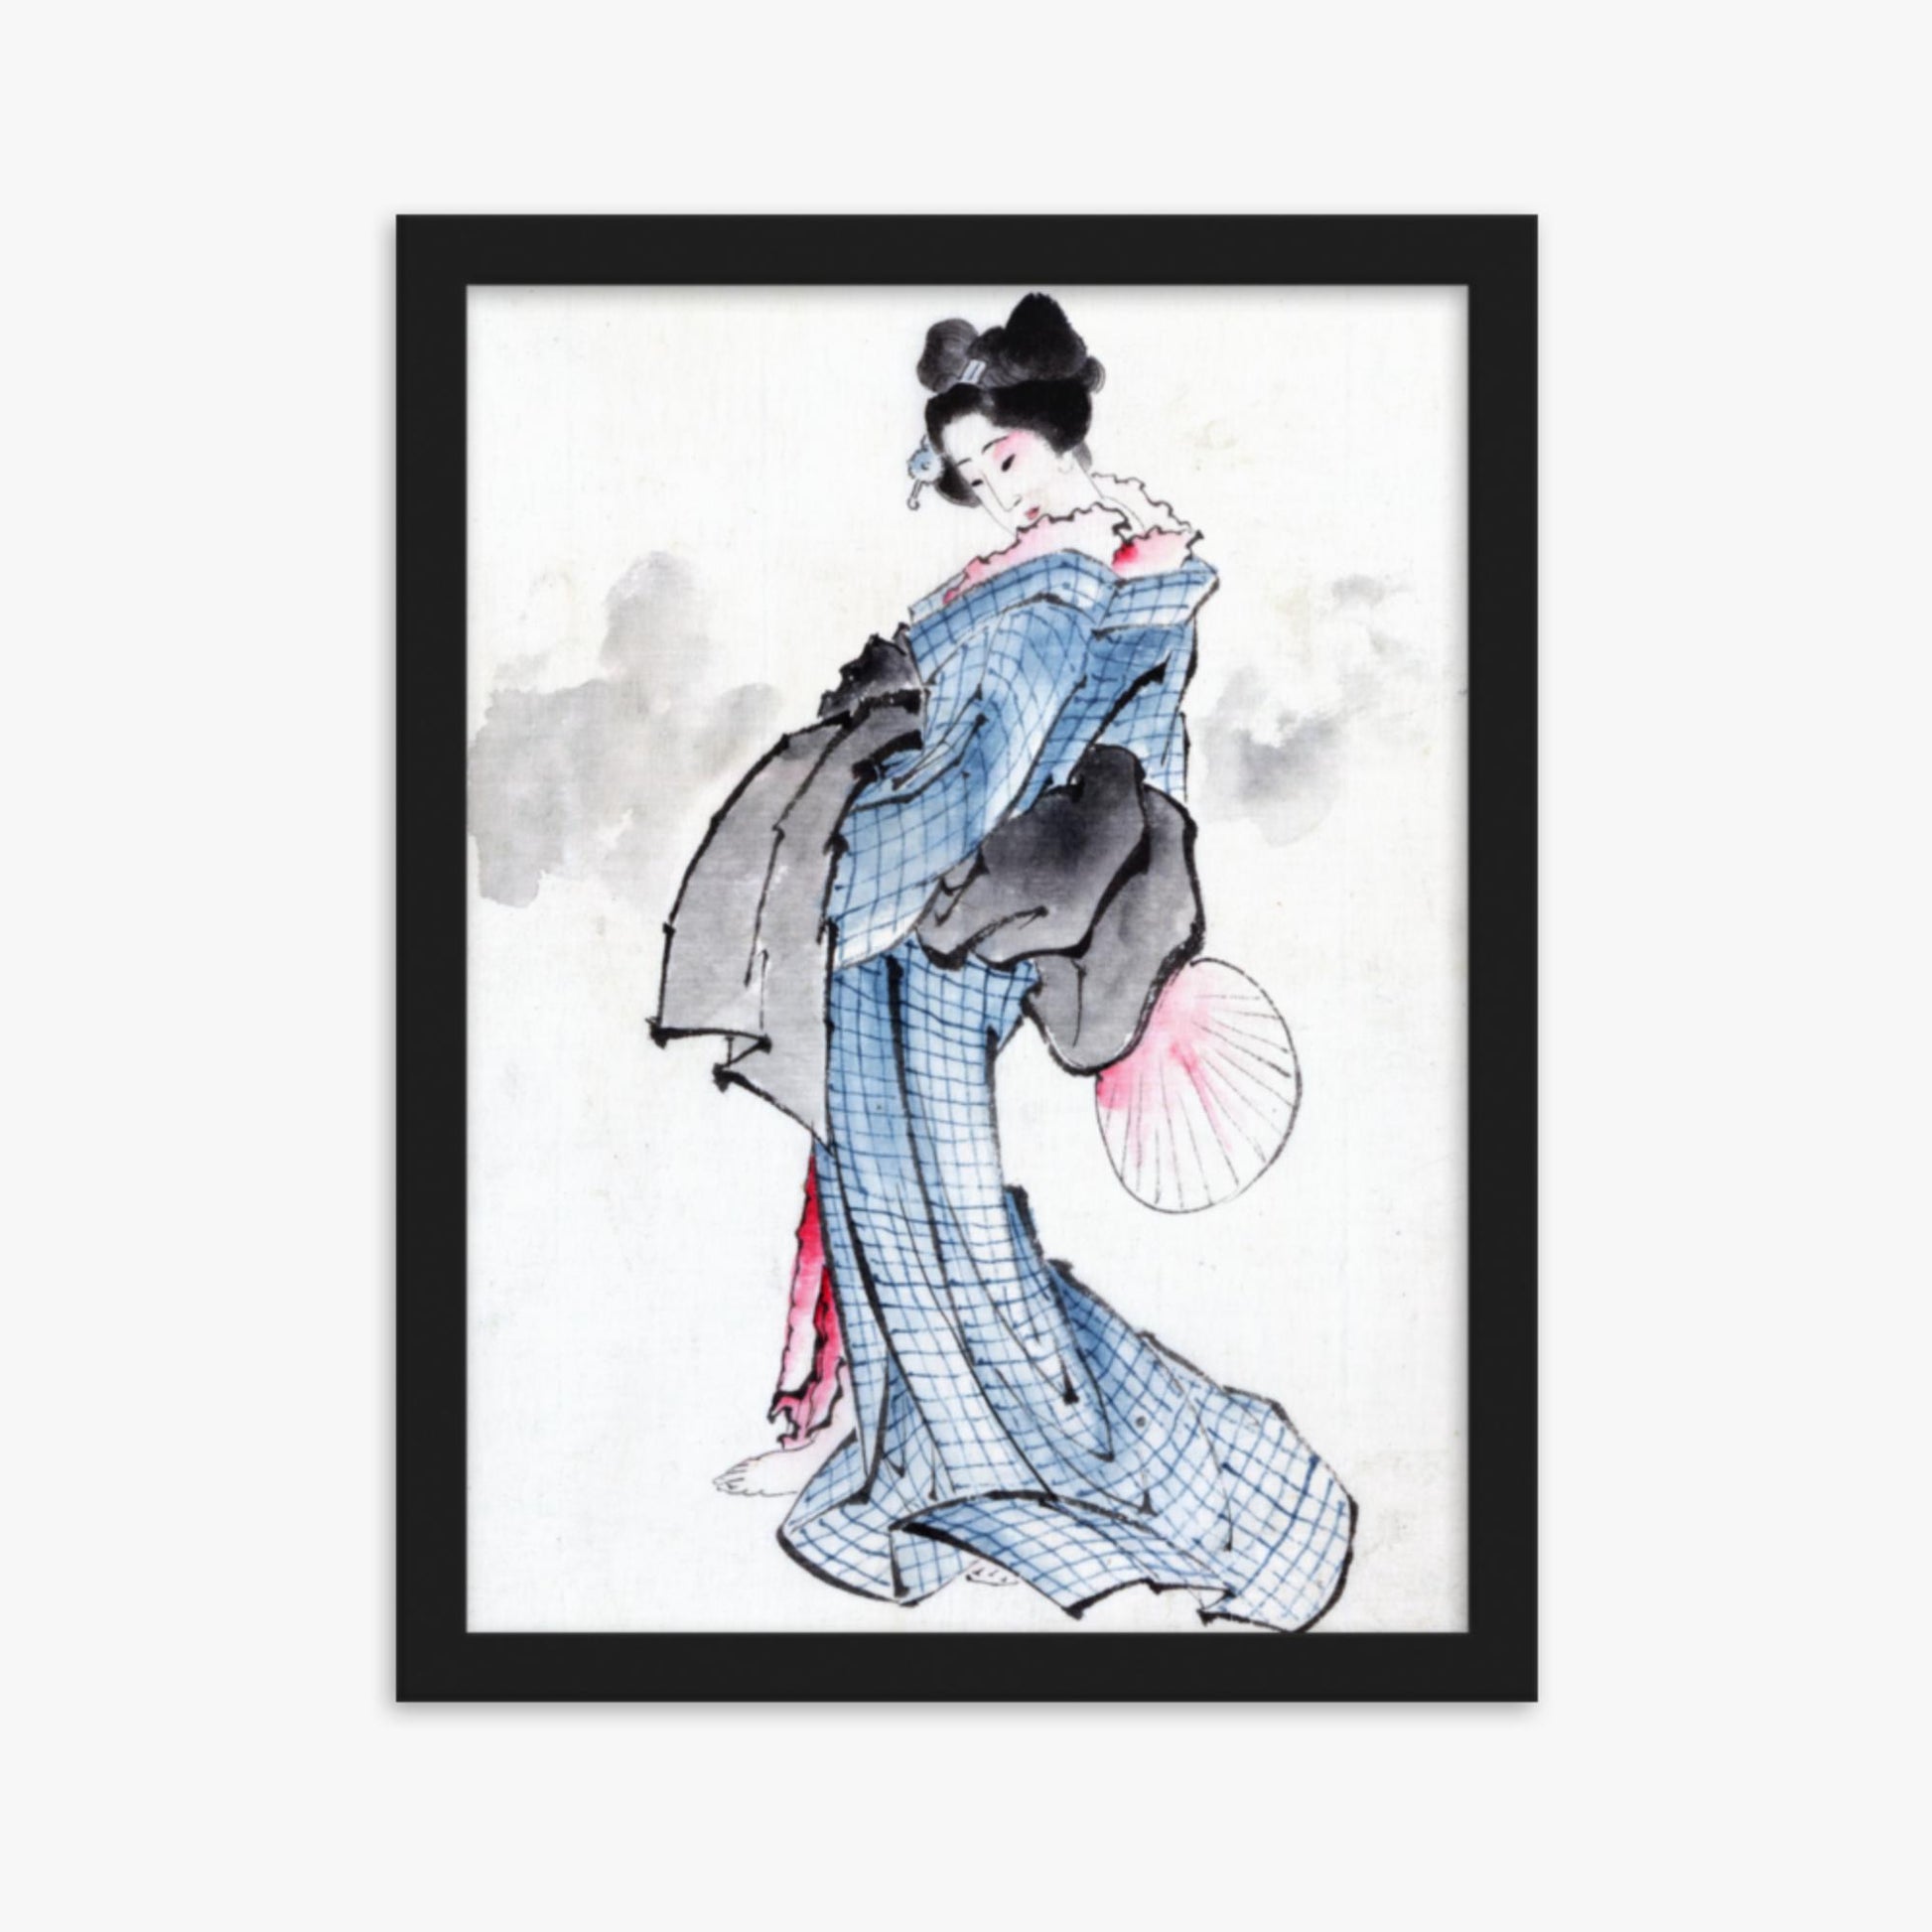 Katsushika Hokusai - Illustration of a Japanese Woman in Kimono 30x40 cm Poster With Black Frame